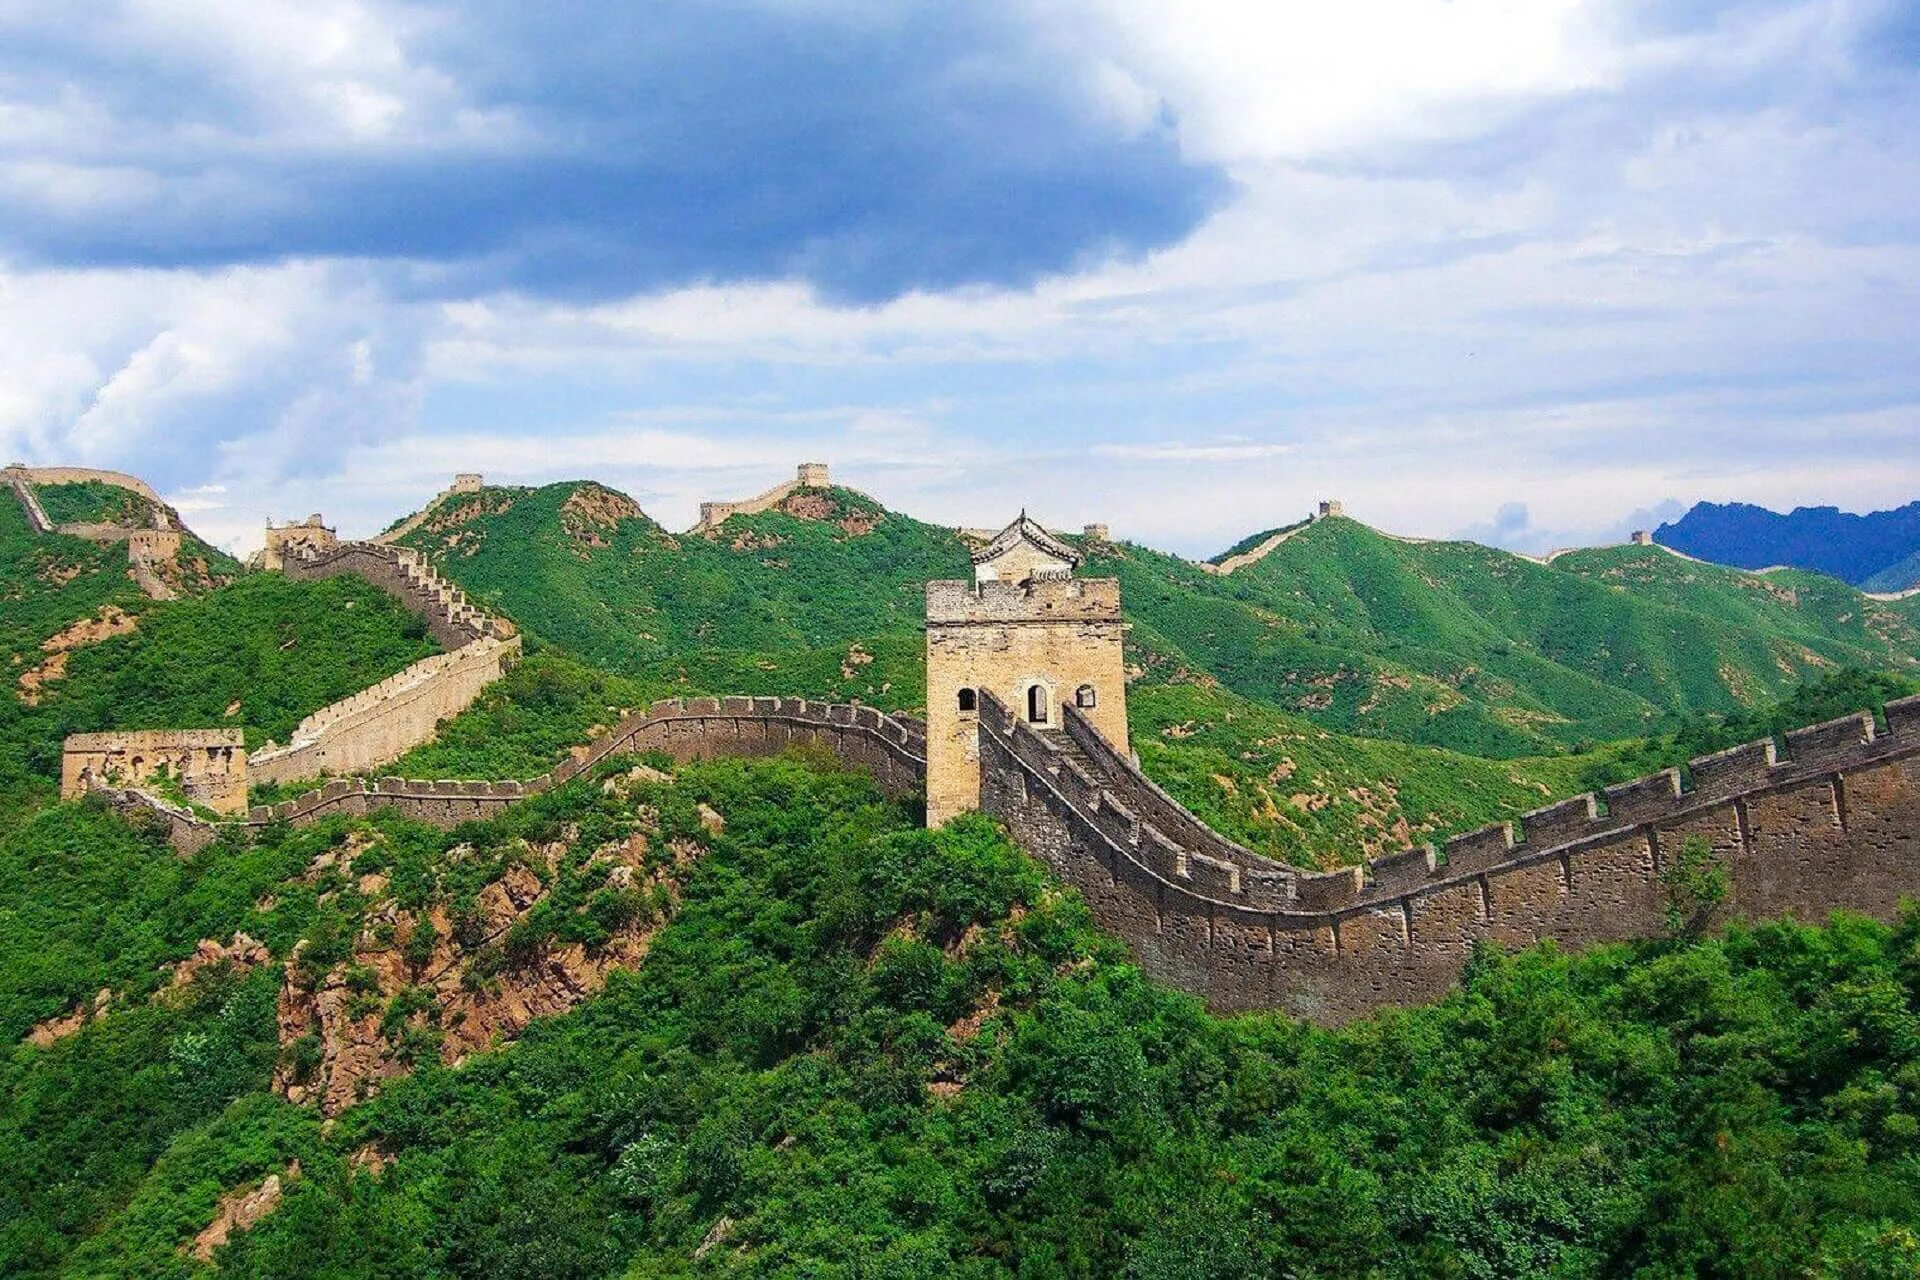 Китайская стена достопримечательность. Великая китайская стена. Бадалин Пекин. Пекин китайская стена. 2. Великая китайская стена, Китай.